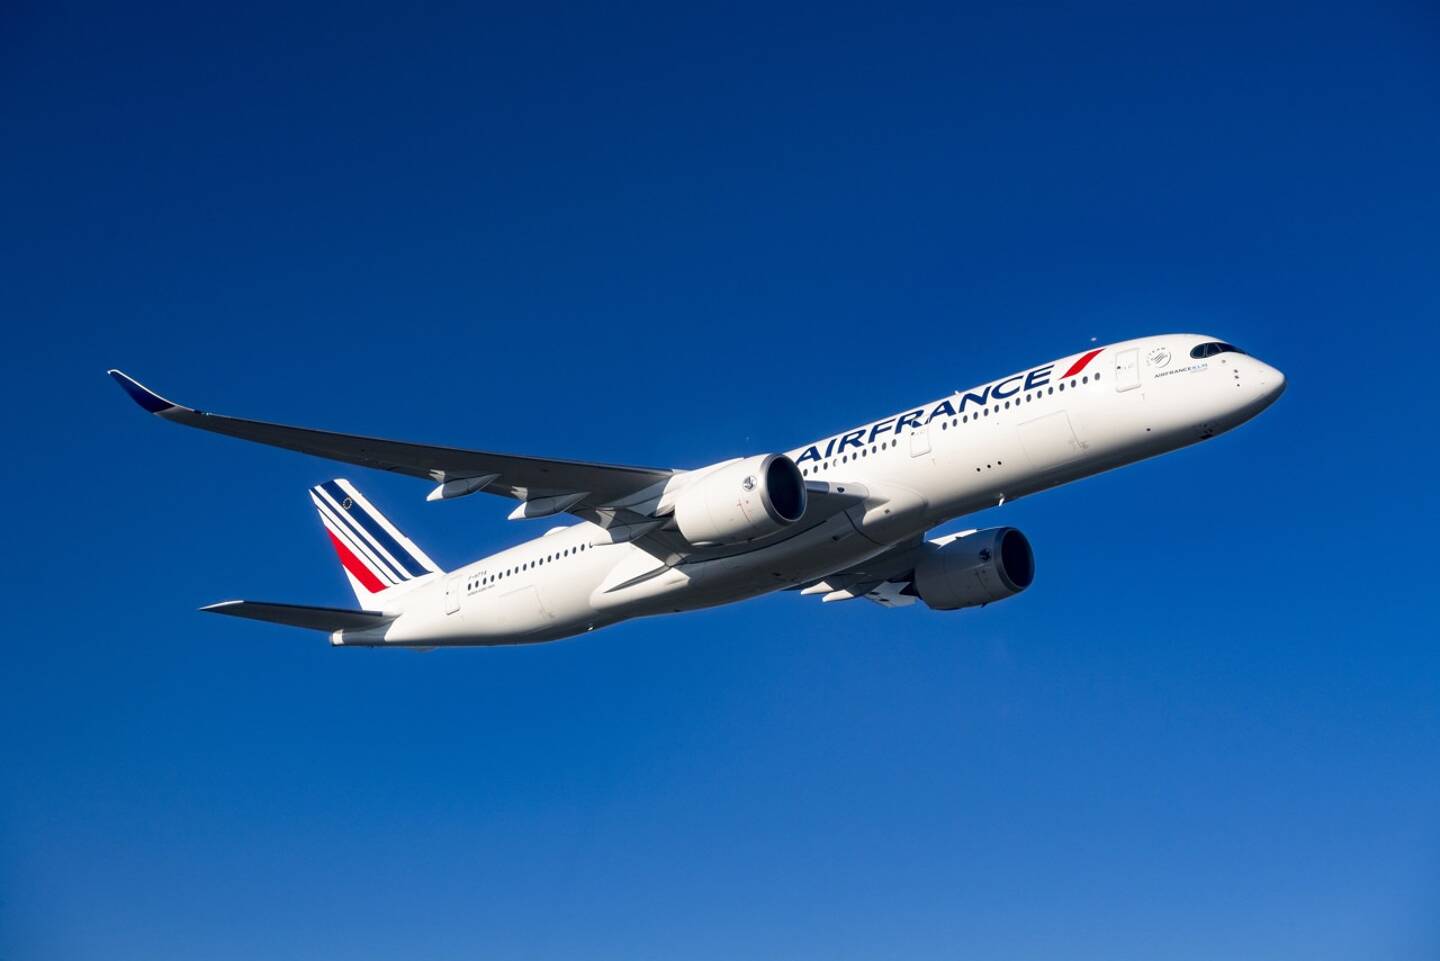 Comme le veut la tradition de nommer les avions avec des villes françaises, le dernier appareil A350 sorti des usines Airbus a été baptisé "Cannes" .